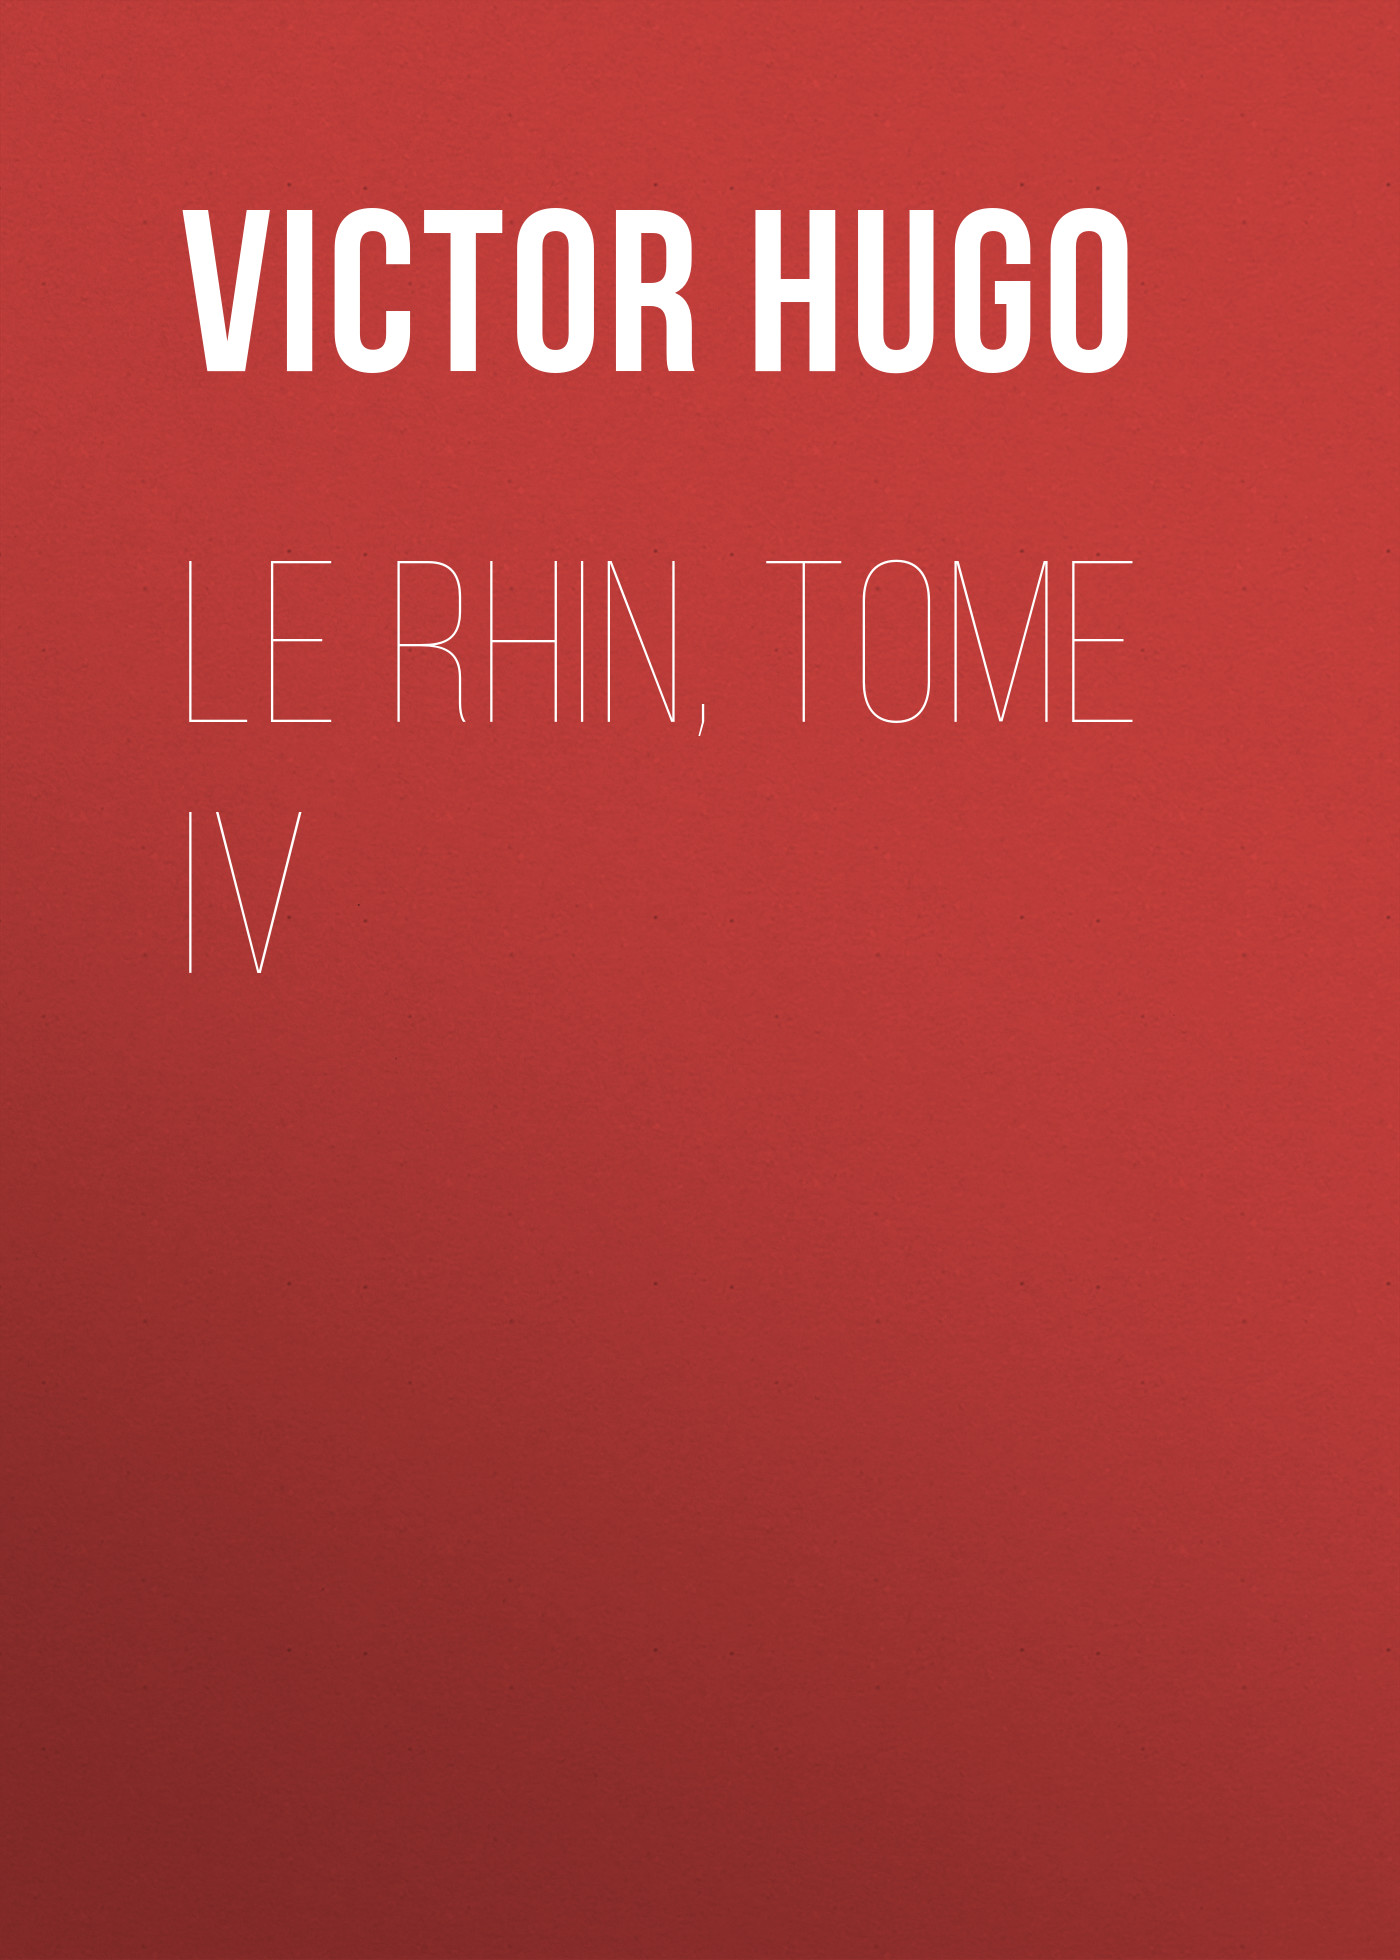 Книга Le Rhin, Tome IV из серии , созданная Victor Hugo, может относится к жанру Литература 19 века, Зарубежная старинная литература, Зарубежная классика. Стоимость электронной книги Le Rhin, Tome IV с идентификатором 25230308 составляет 0 руб.